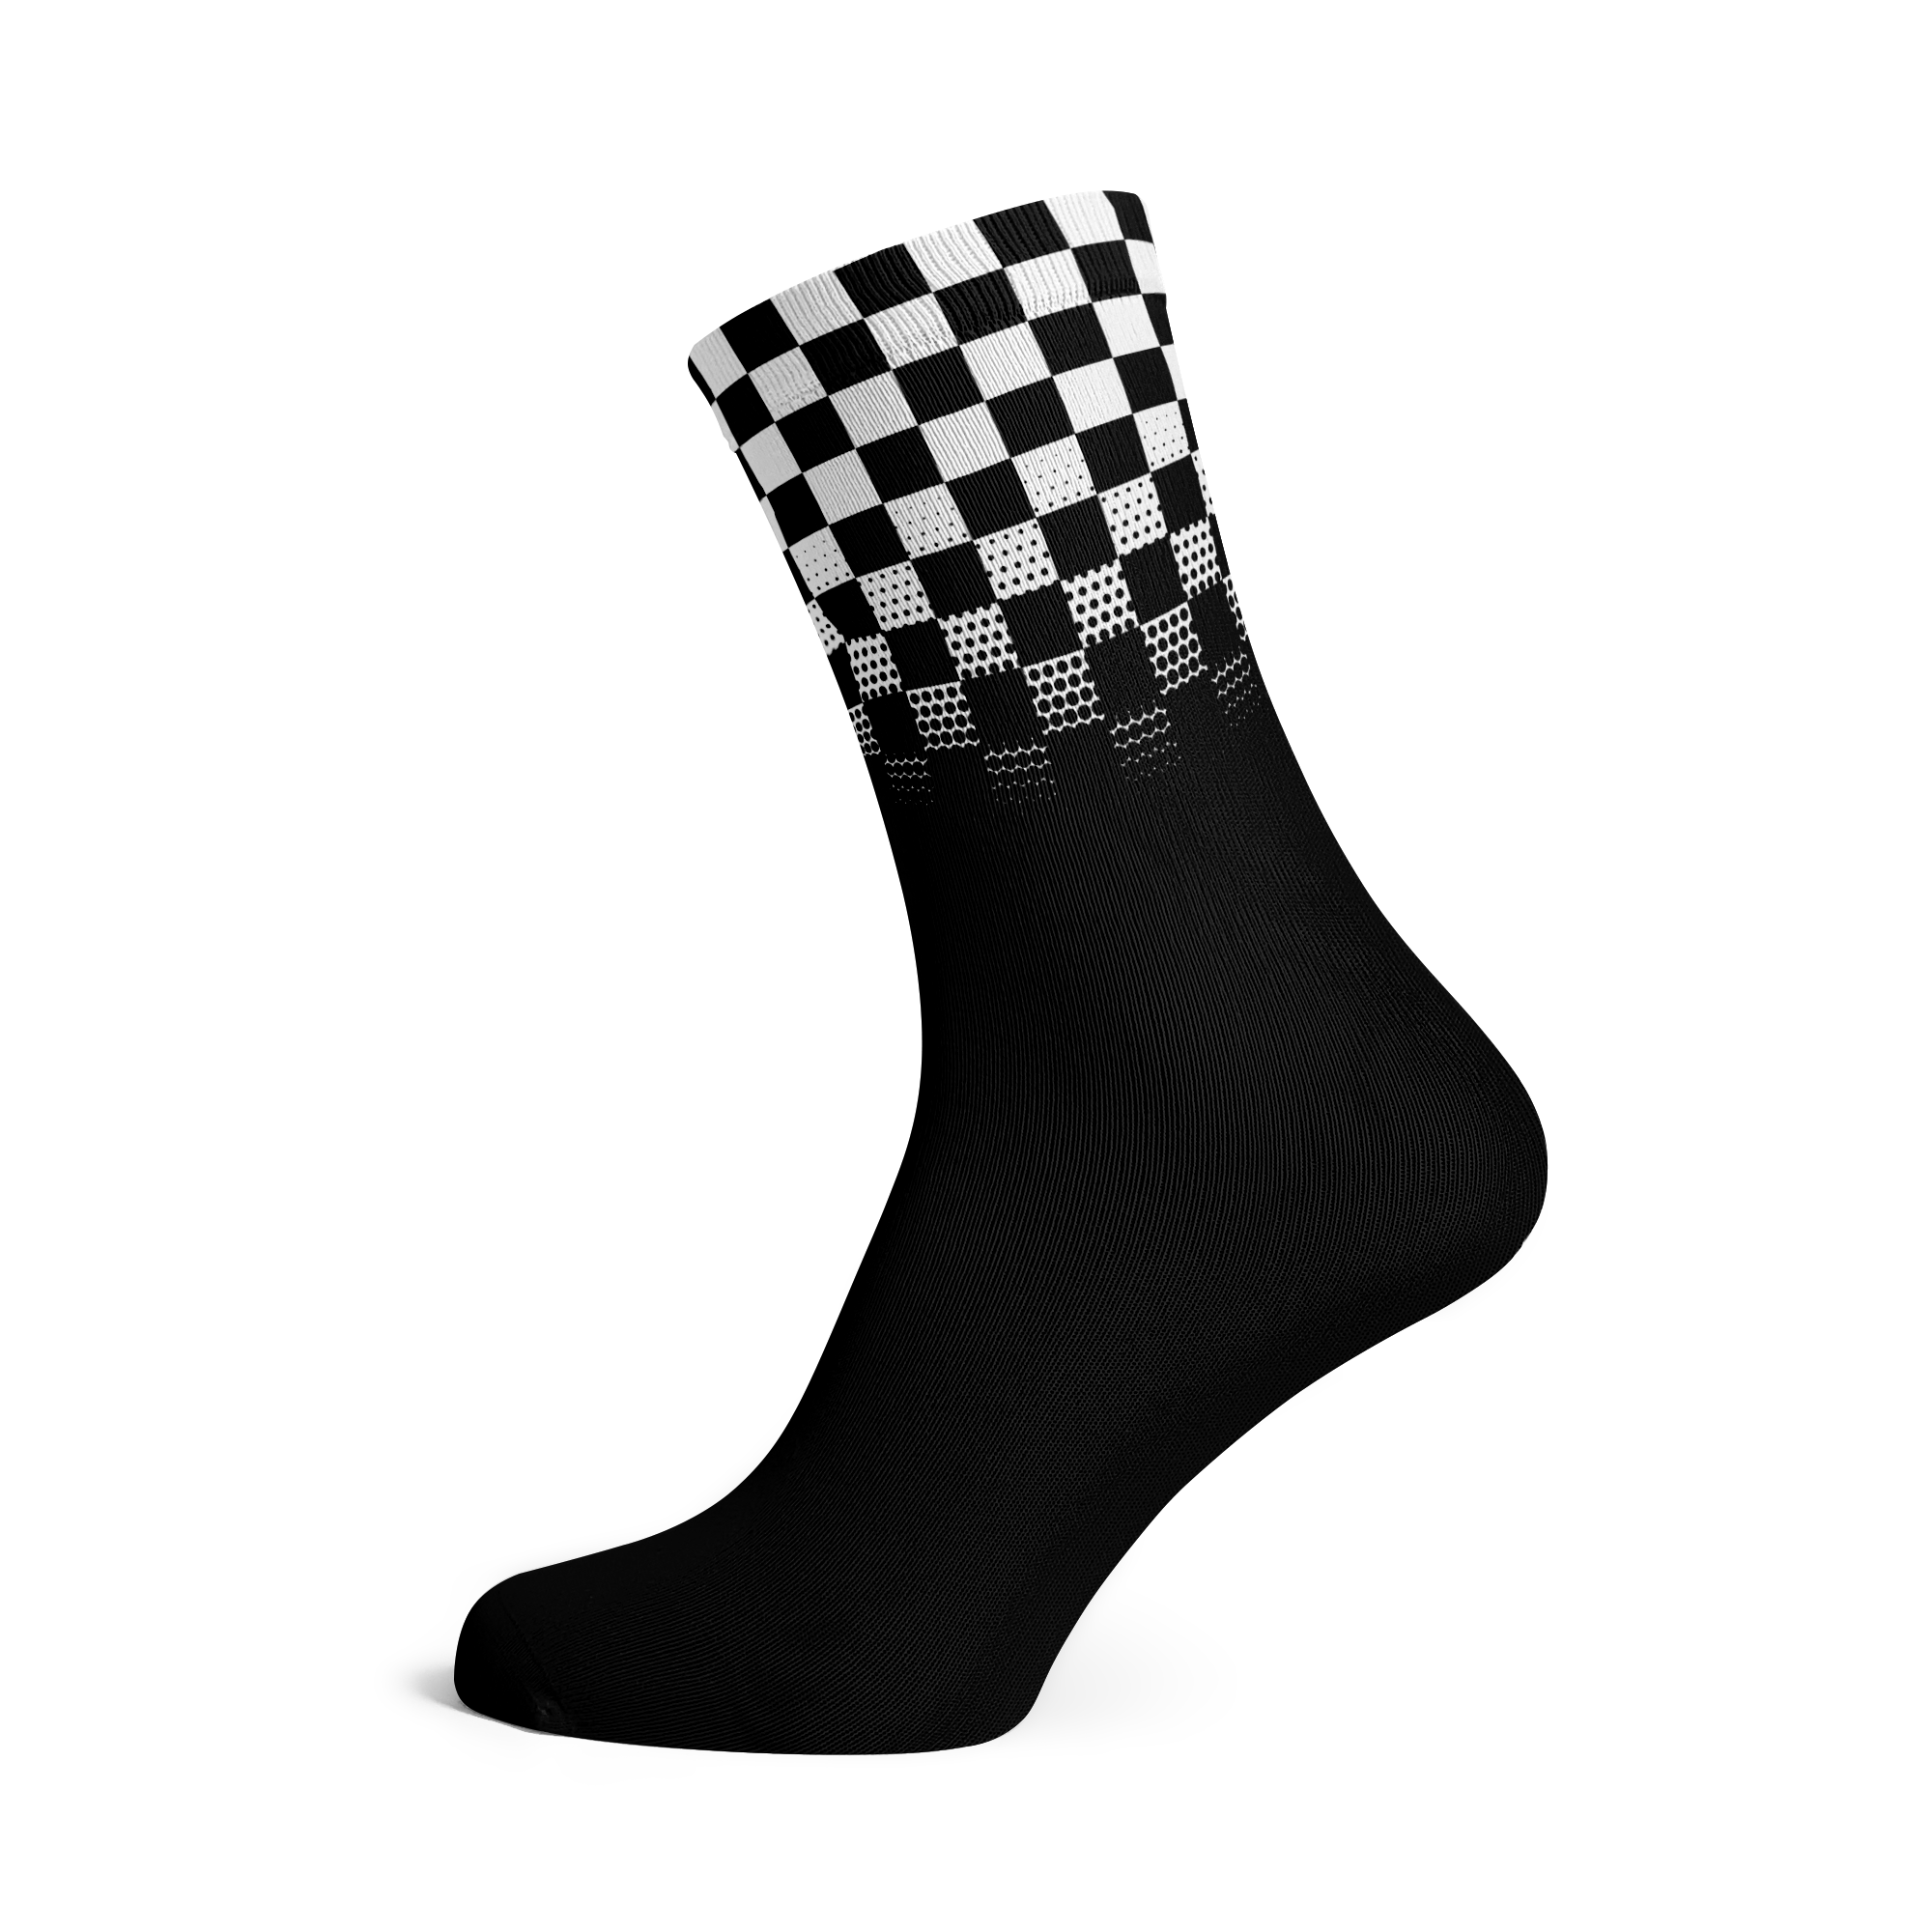 Racing Socks